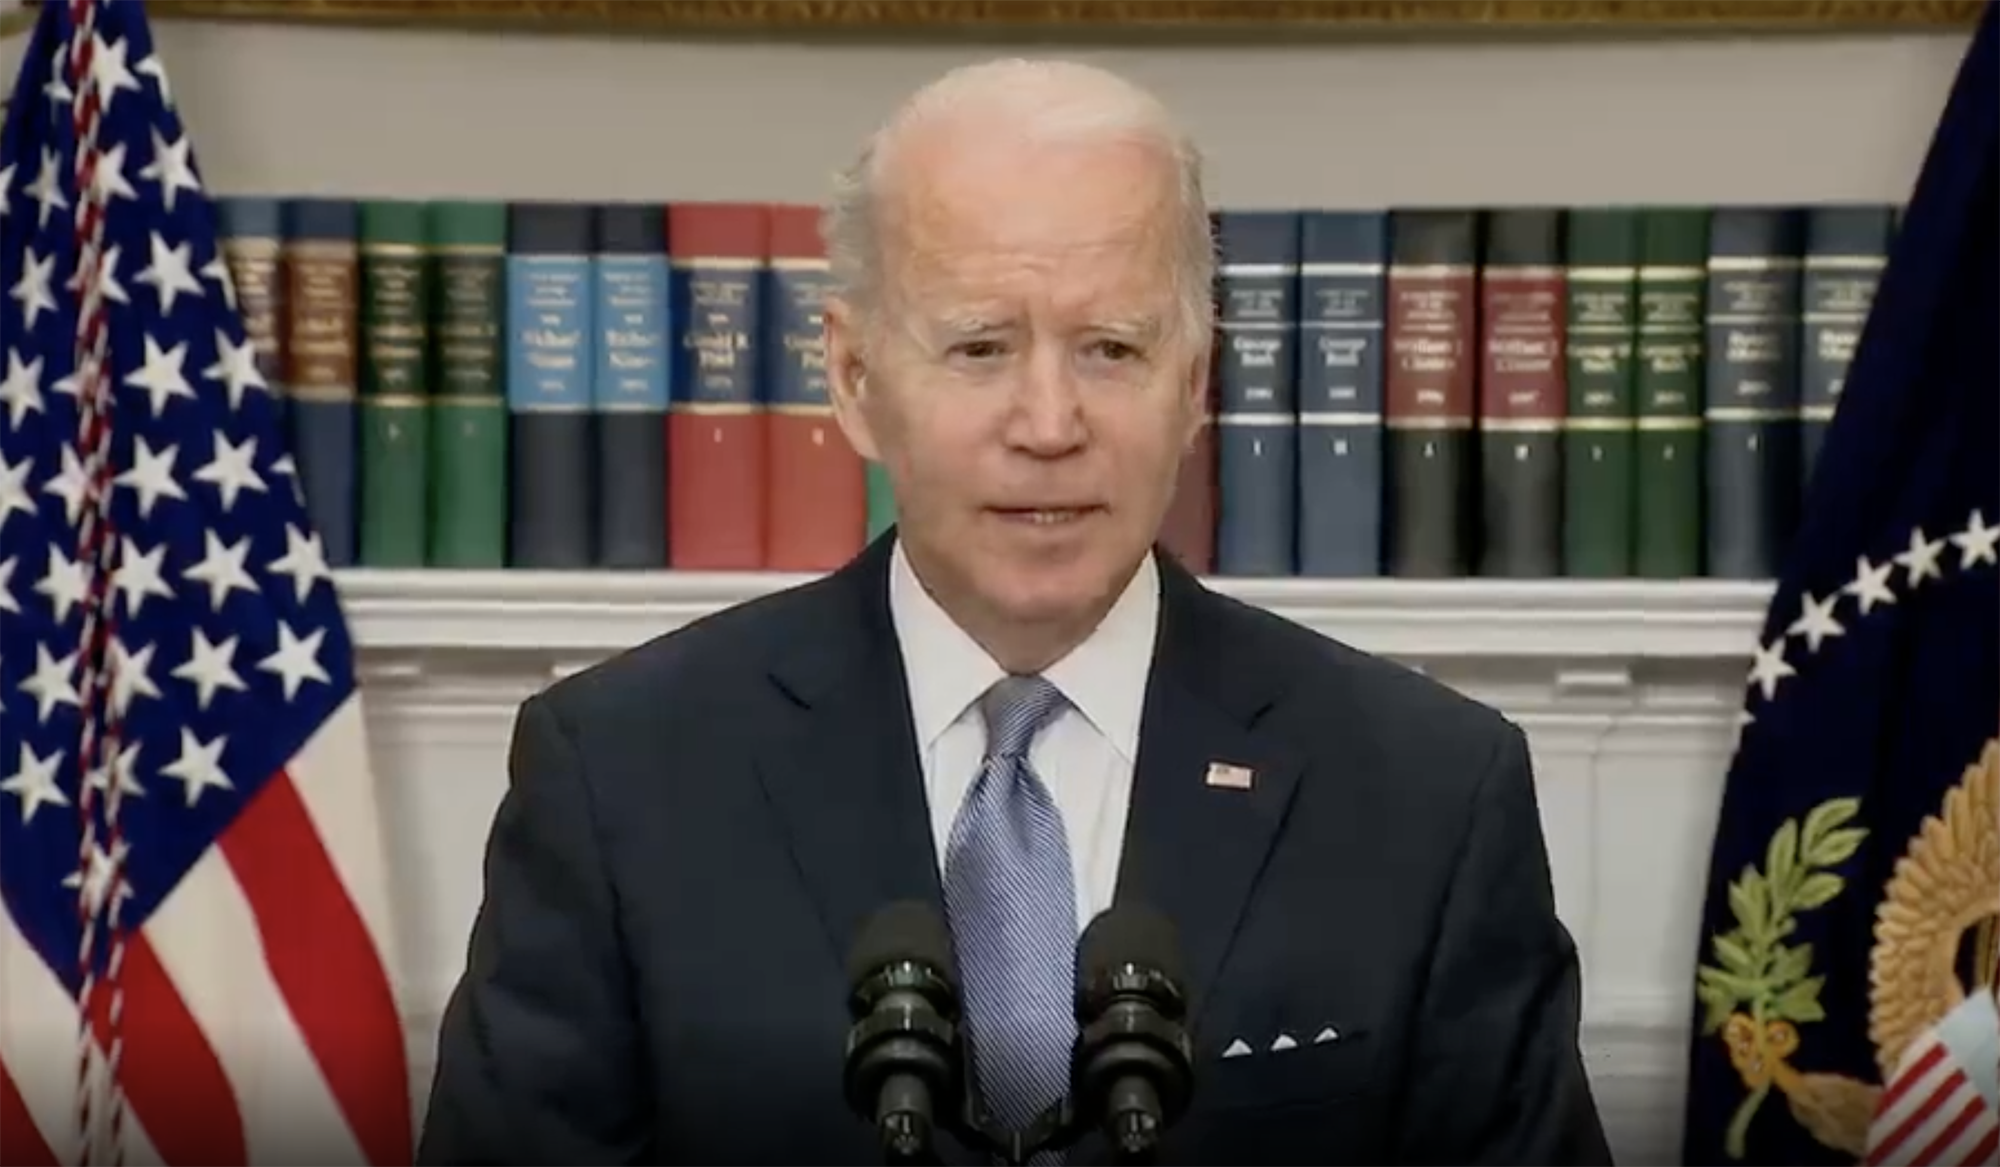 US President Joe Biden speaking from the White House in Washington D.C on April 21